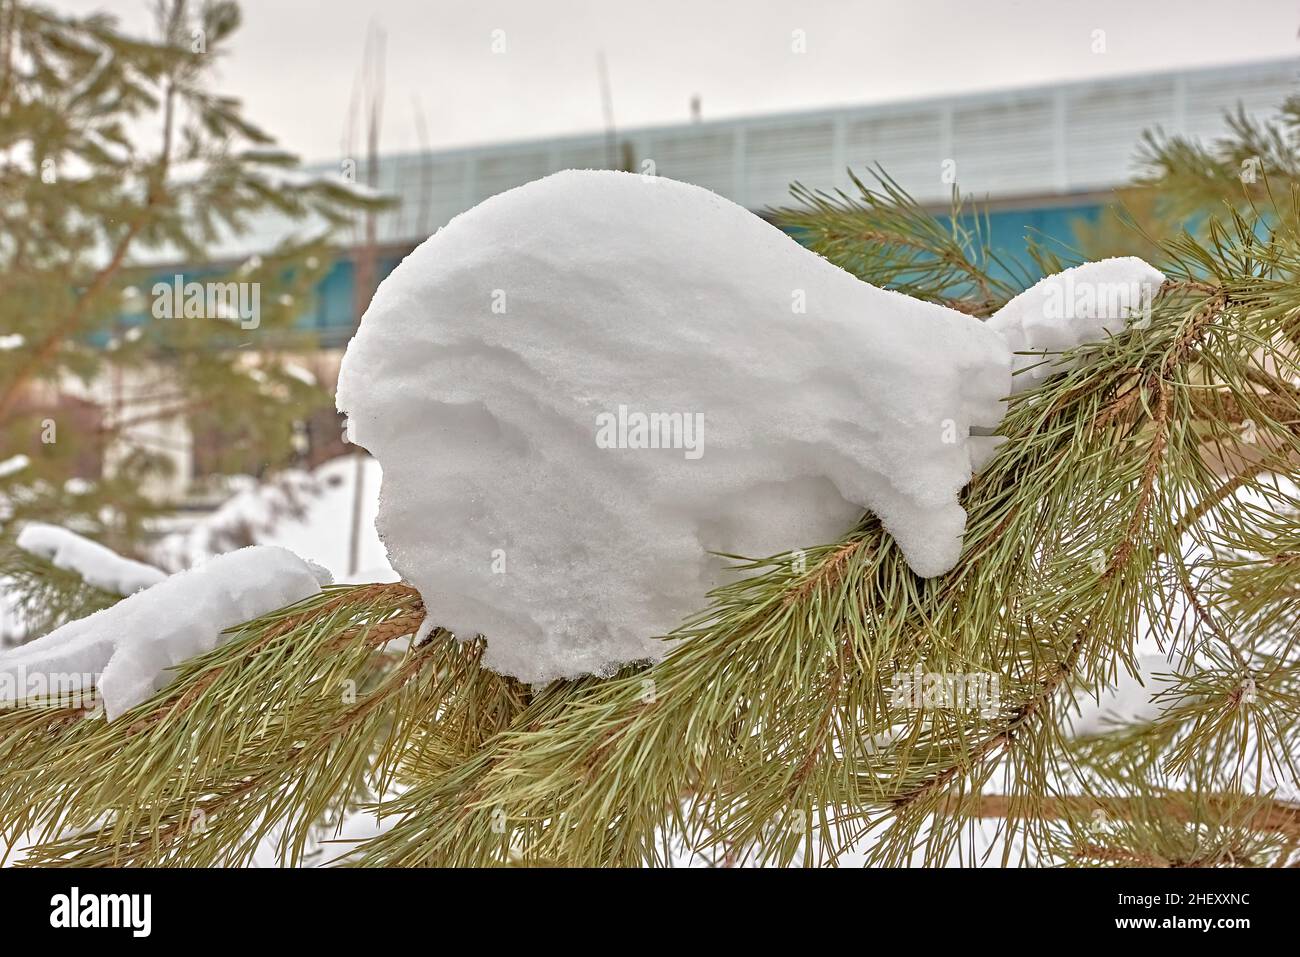 La palla di neve, dopo i cambiamenti di vento e temperatura, ha acquisito una forma scultorea. I contorni di un essere vivente, un busto, sono visibili. Russia, natura Foto Stock